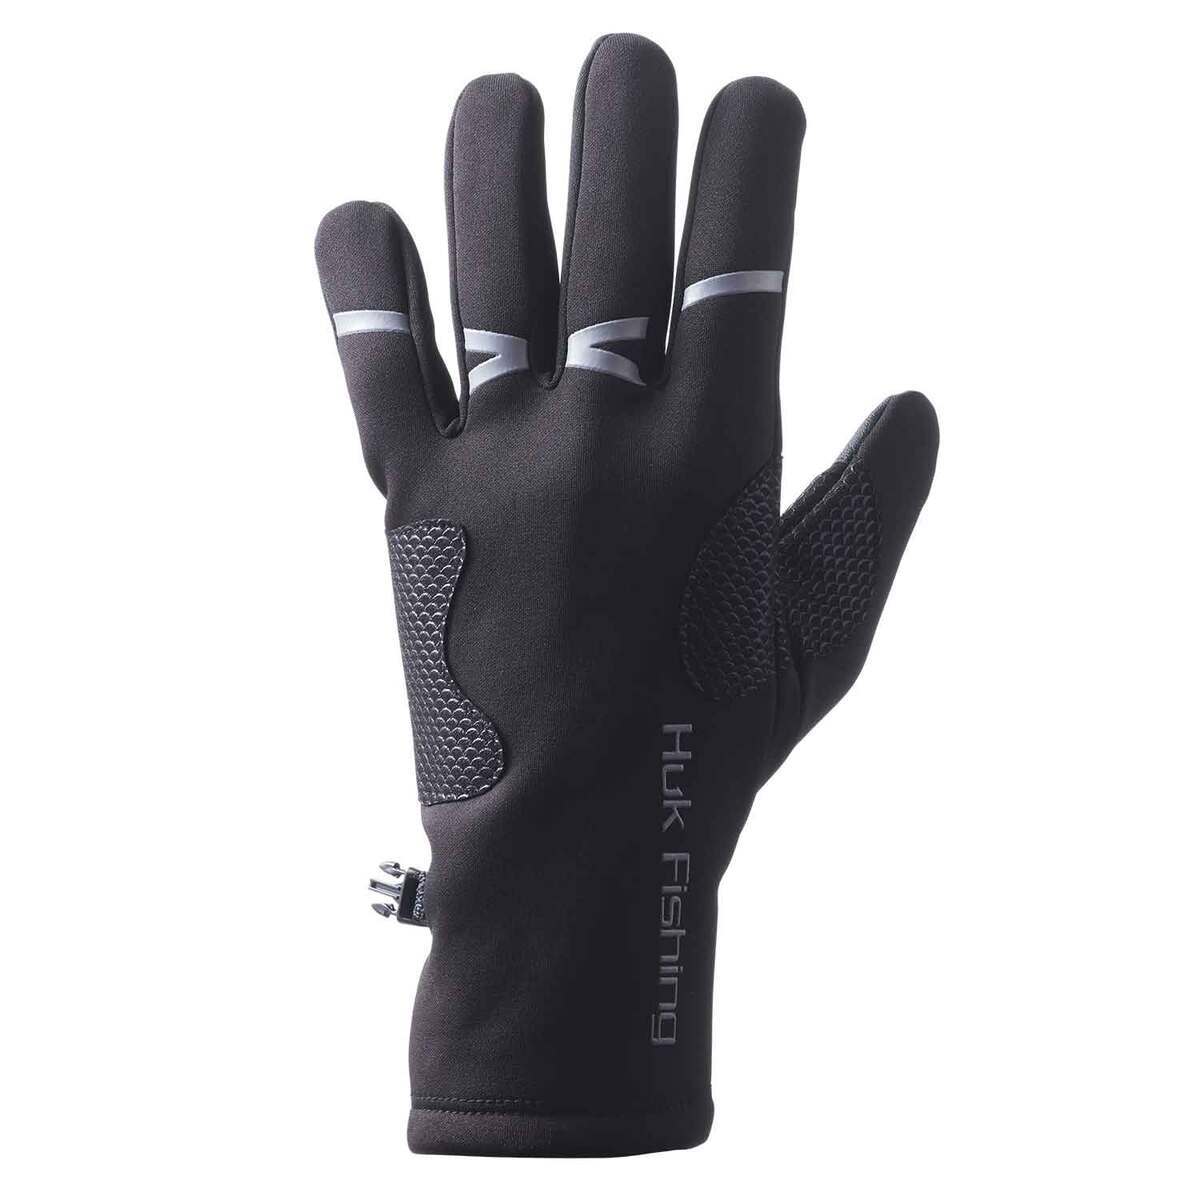 Huk Men's Liner Fishing Gloves | Sportsman's Warehouse